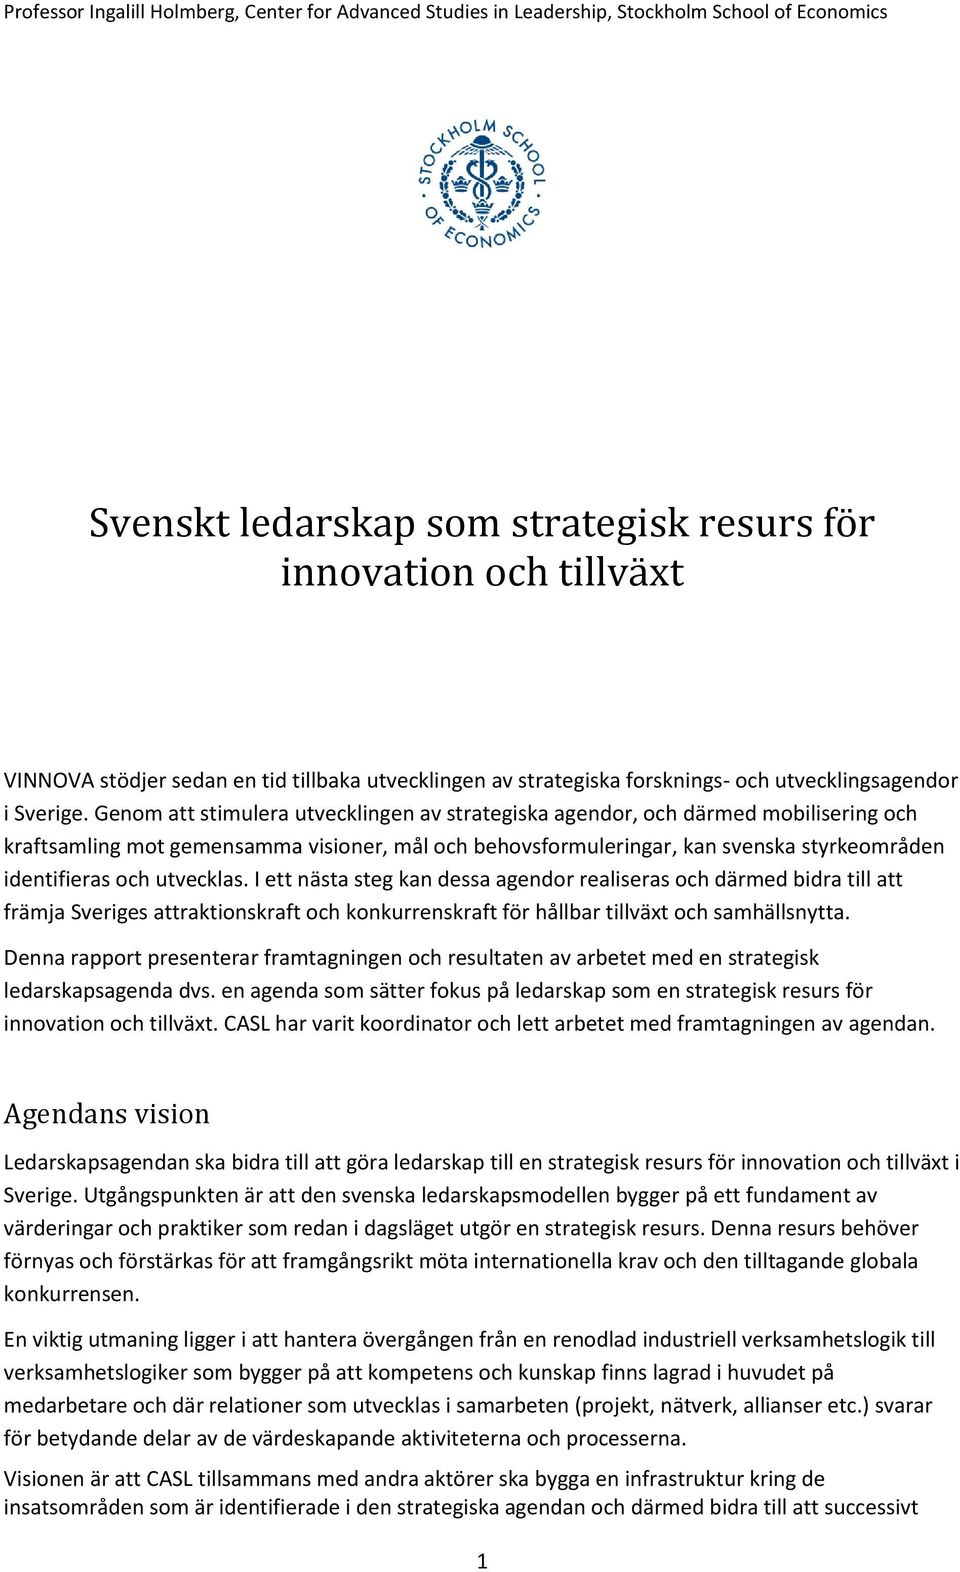 utvecklas. I ett nästa steg kan dessa agendor realiseras och därmed bidra till att främja Sveriges attraktionskraft och konkurrenskraft för hållbar tillväxt och samhällsnytta.